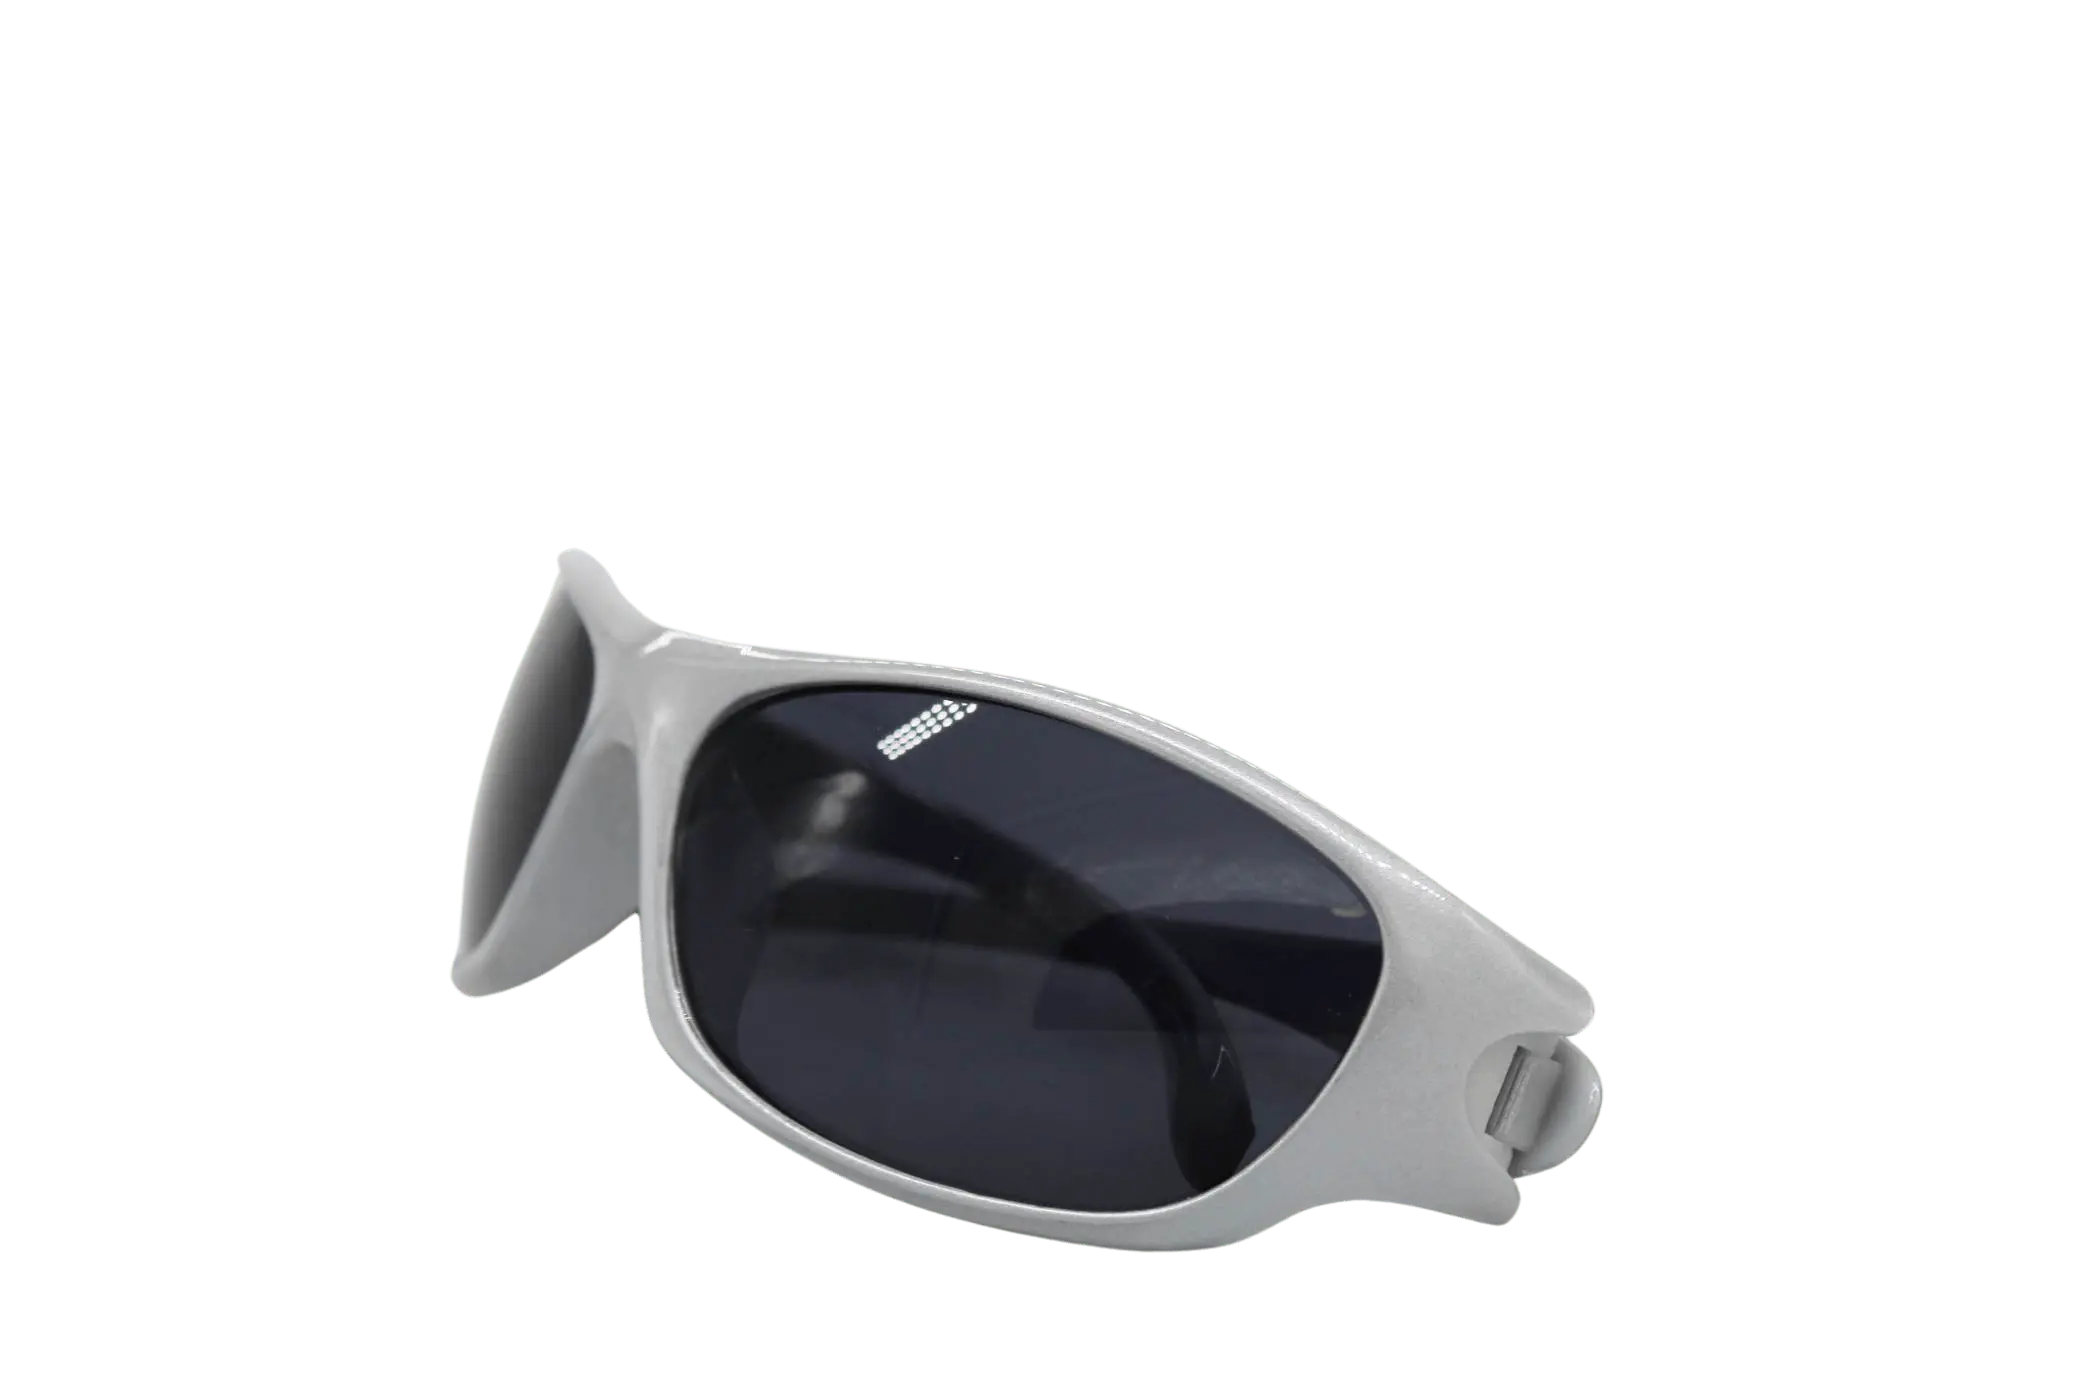 SonicVision Schnelle Brille